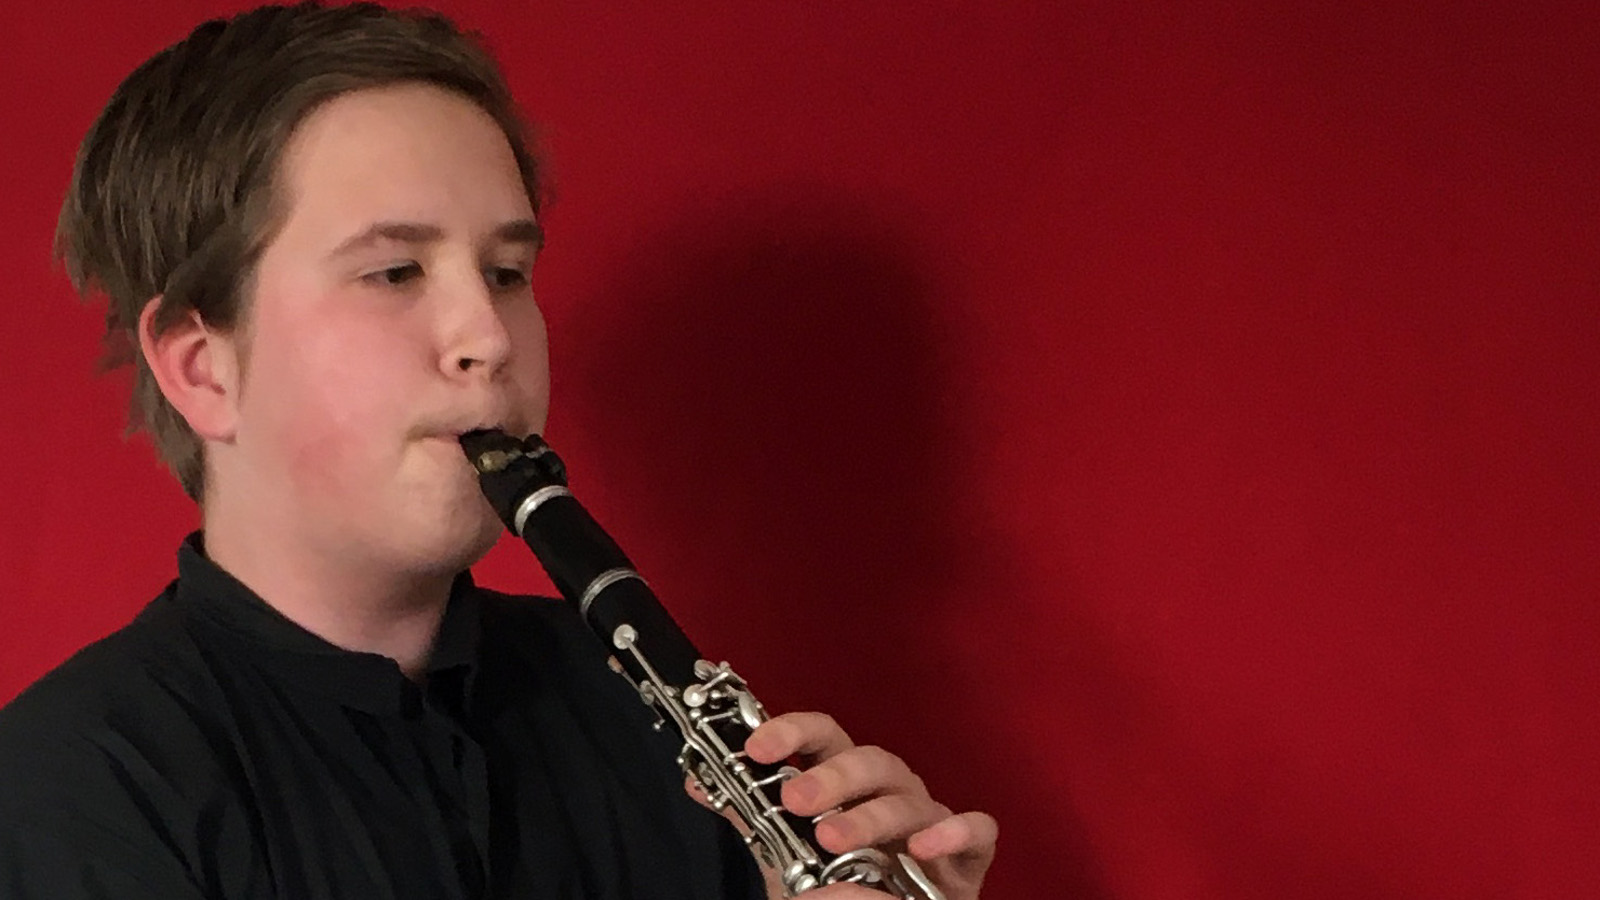 Kuvassa on Joonatan Henriksson kasvokuvassa ja hän soittaa klarinettia. Hänellä on musta paita päällään ja tausta on punainen.